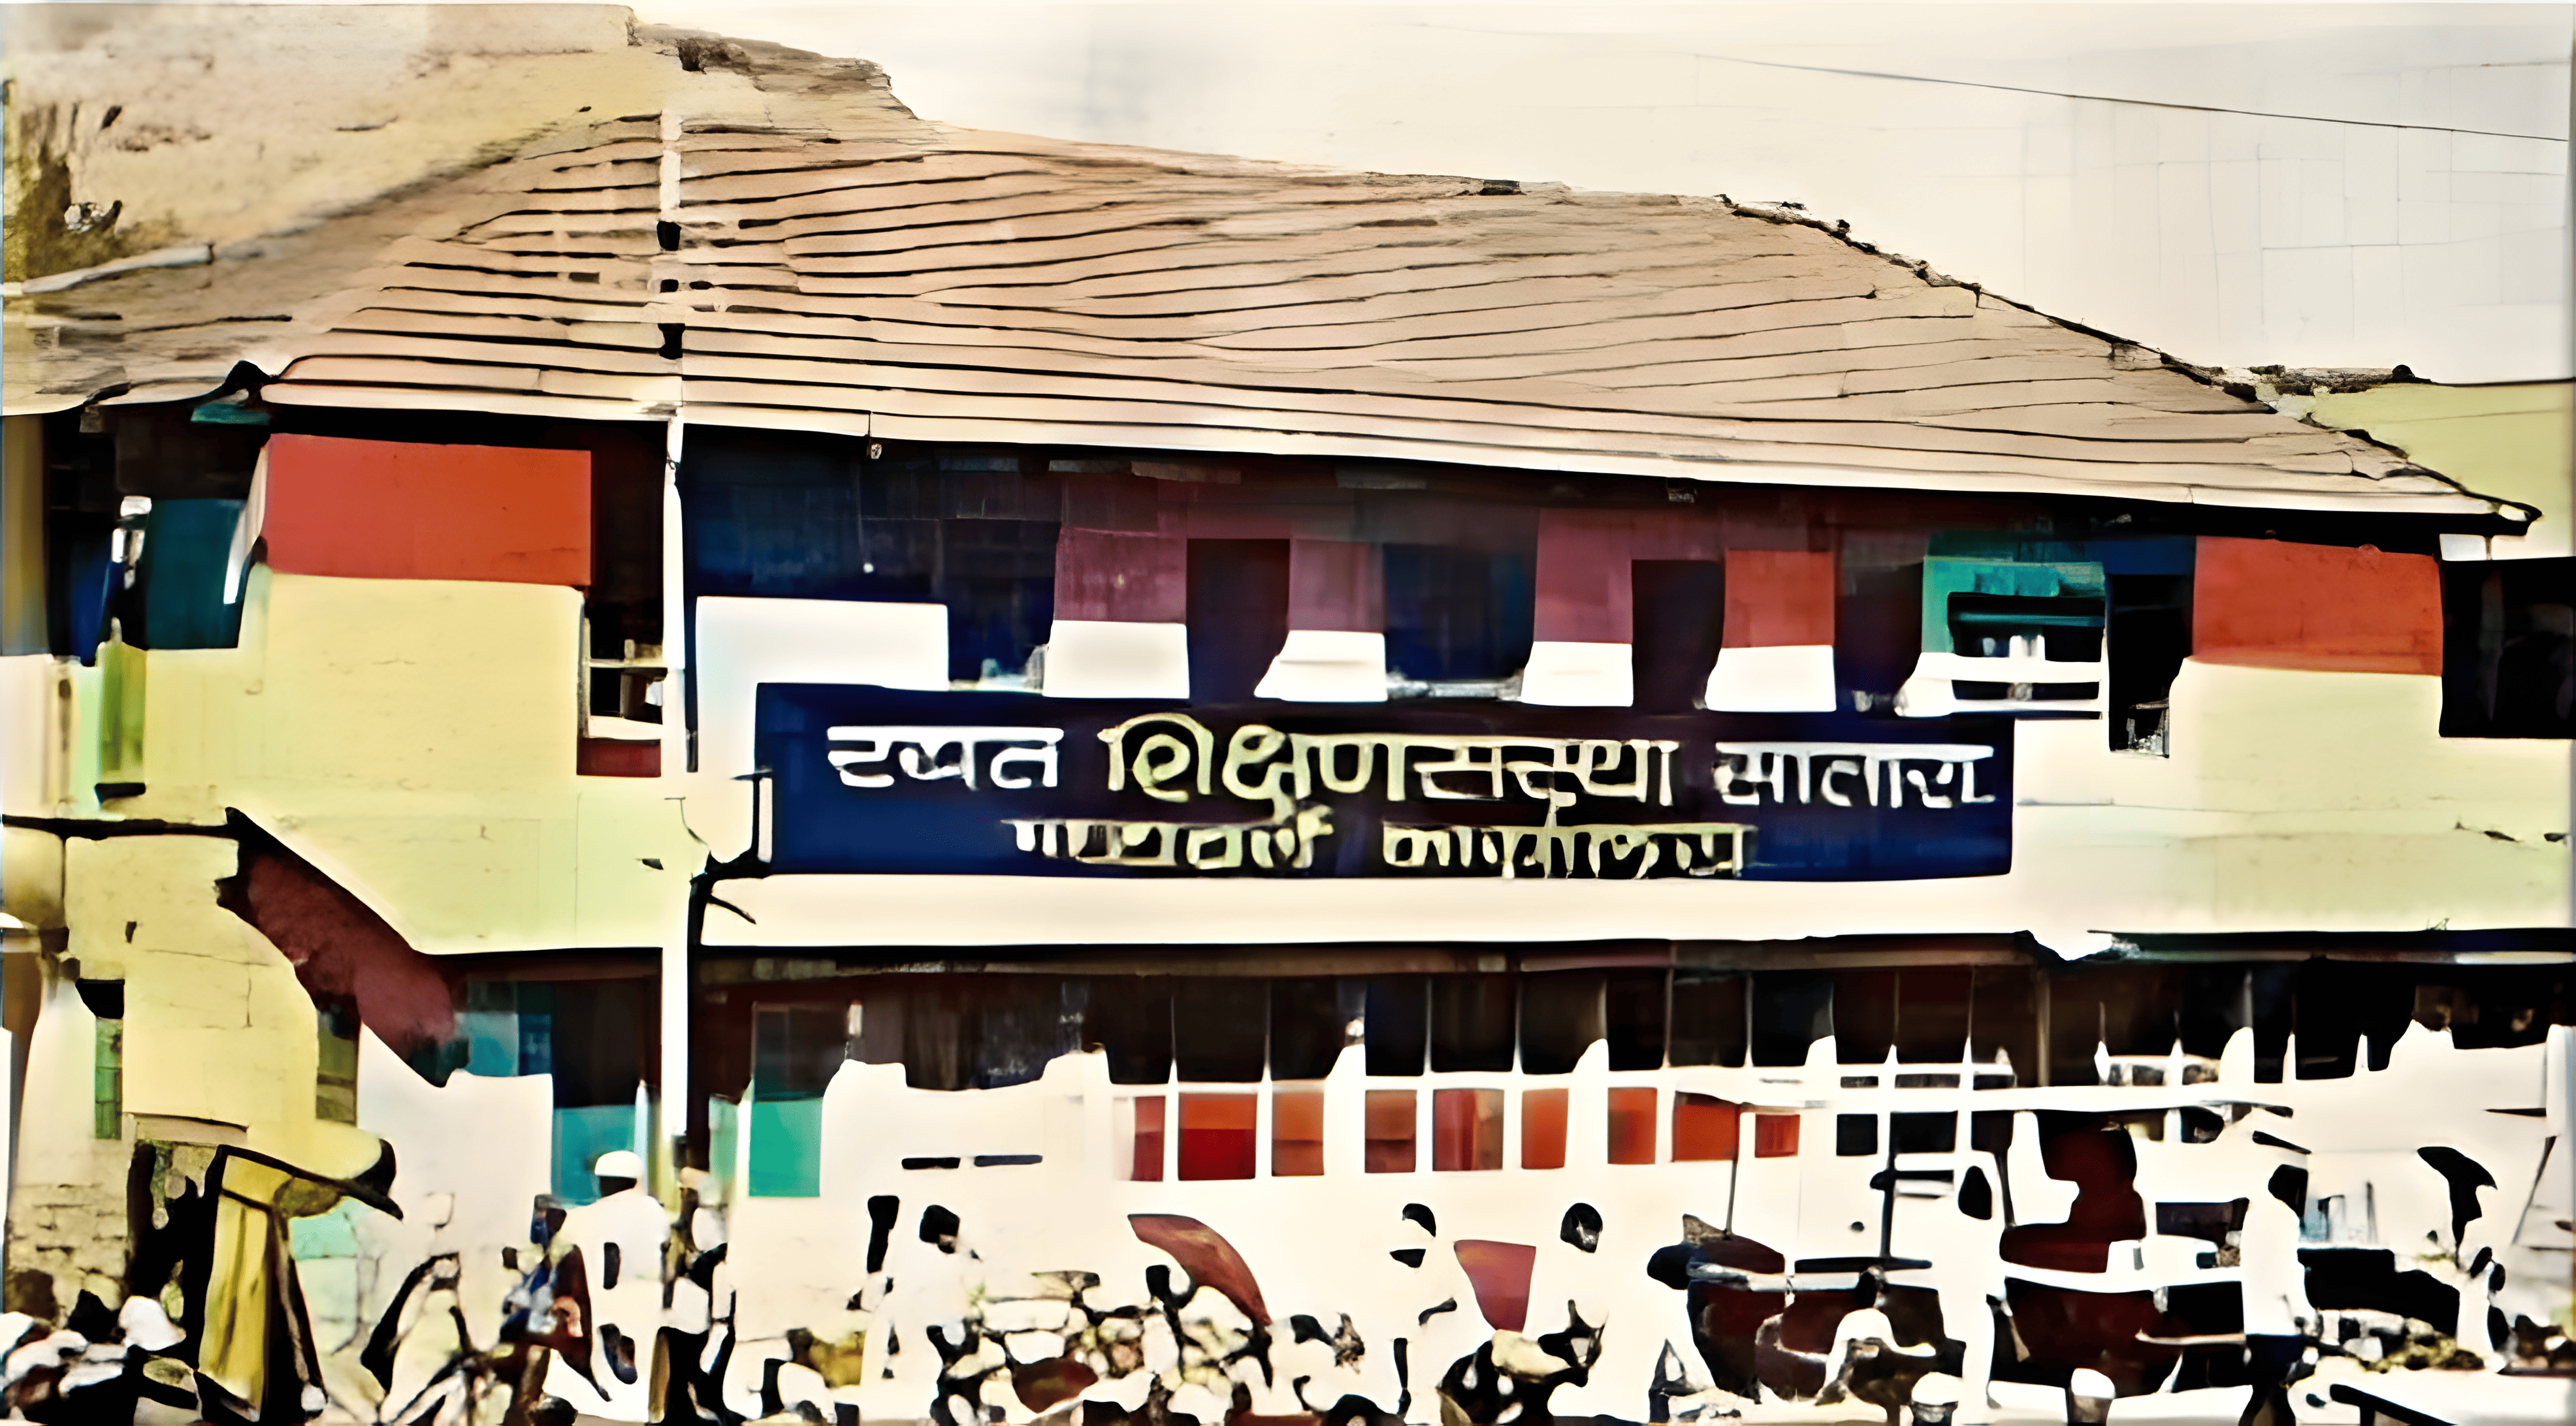 Rayat Shikshan Sanstha founded by Bhaurao Patil